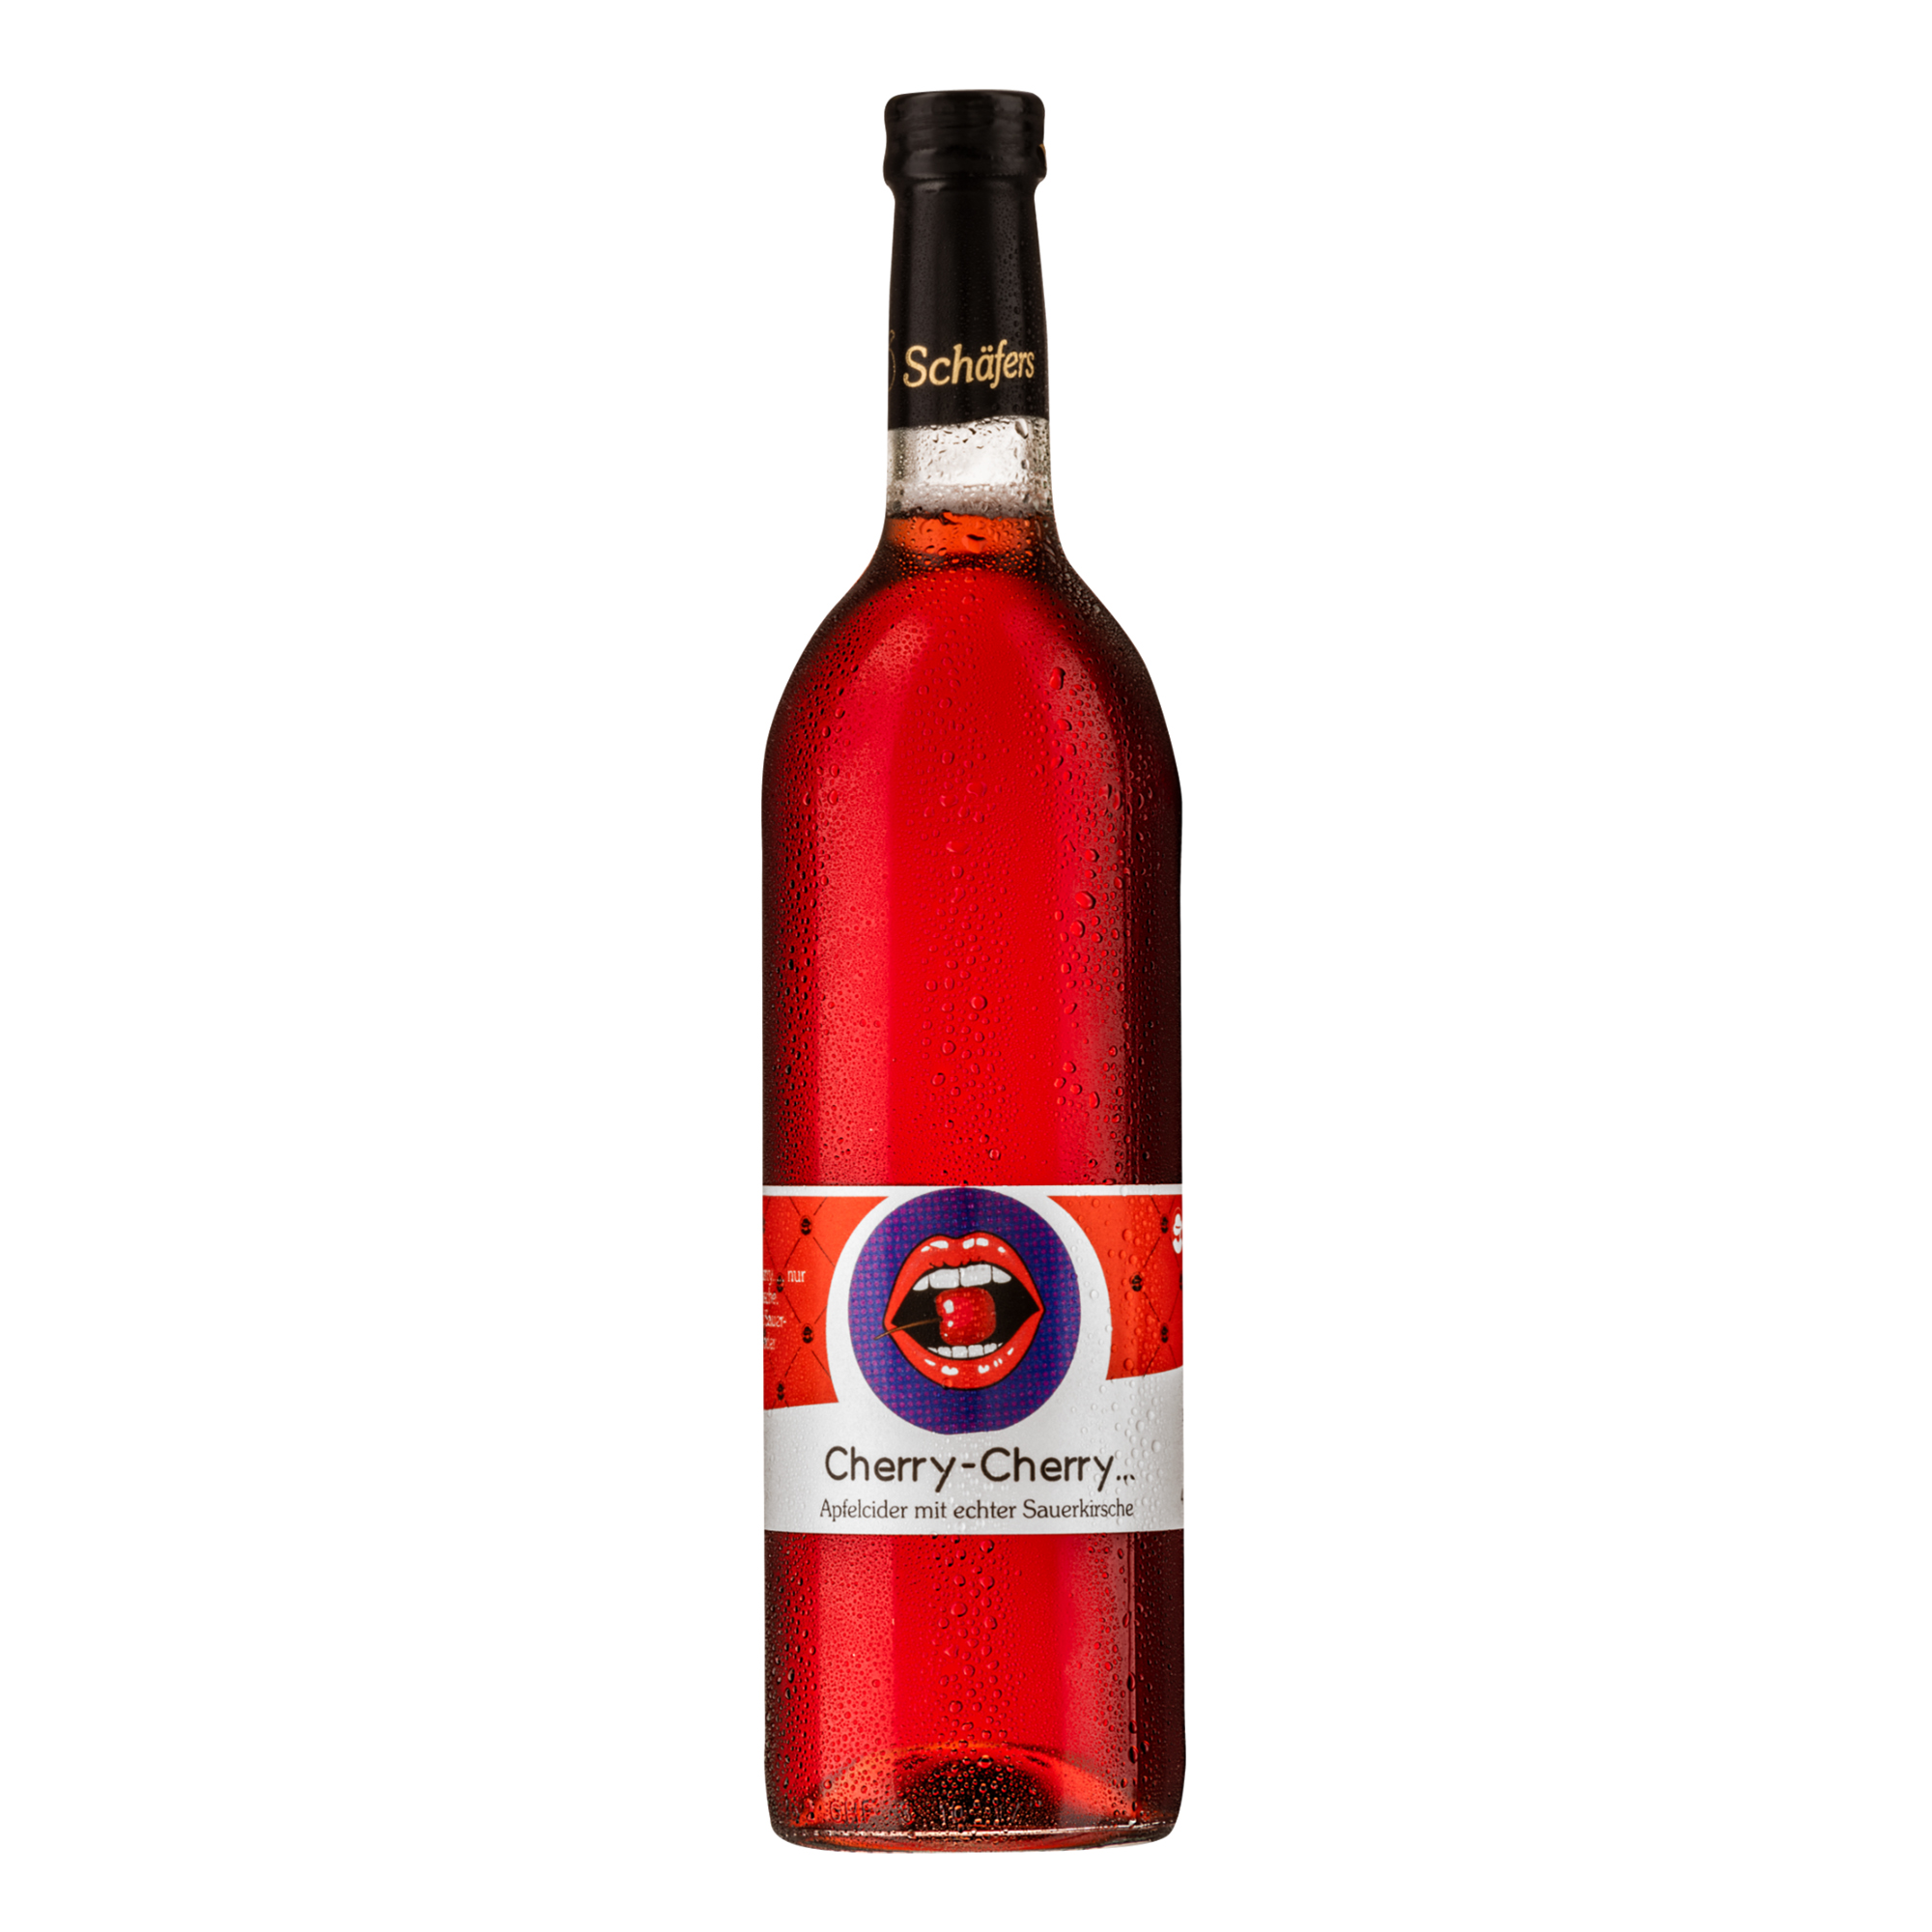 Schäfers Cherry Cherry Cider - Apfelcider mit Sauerkirsche 750ml